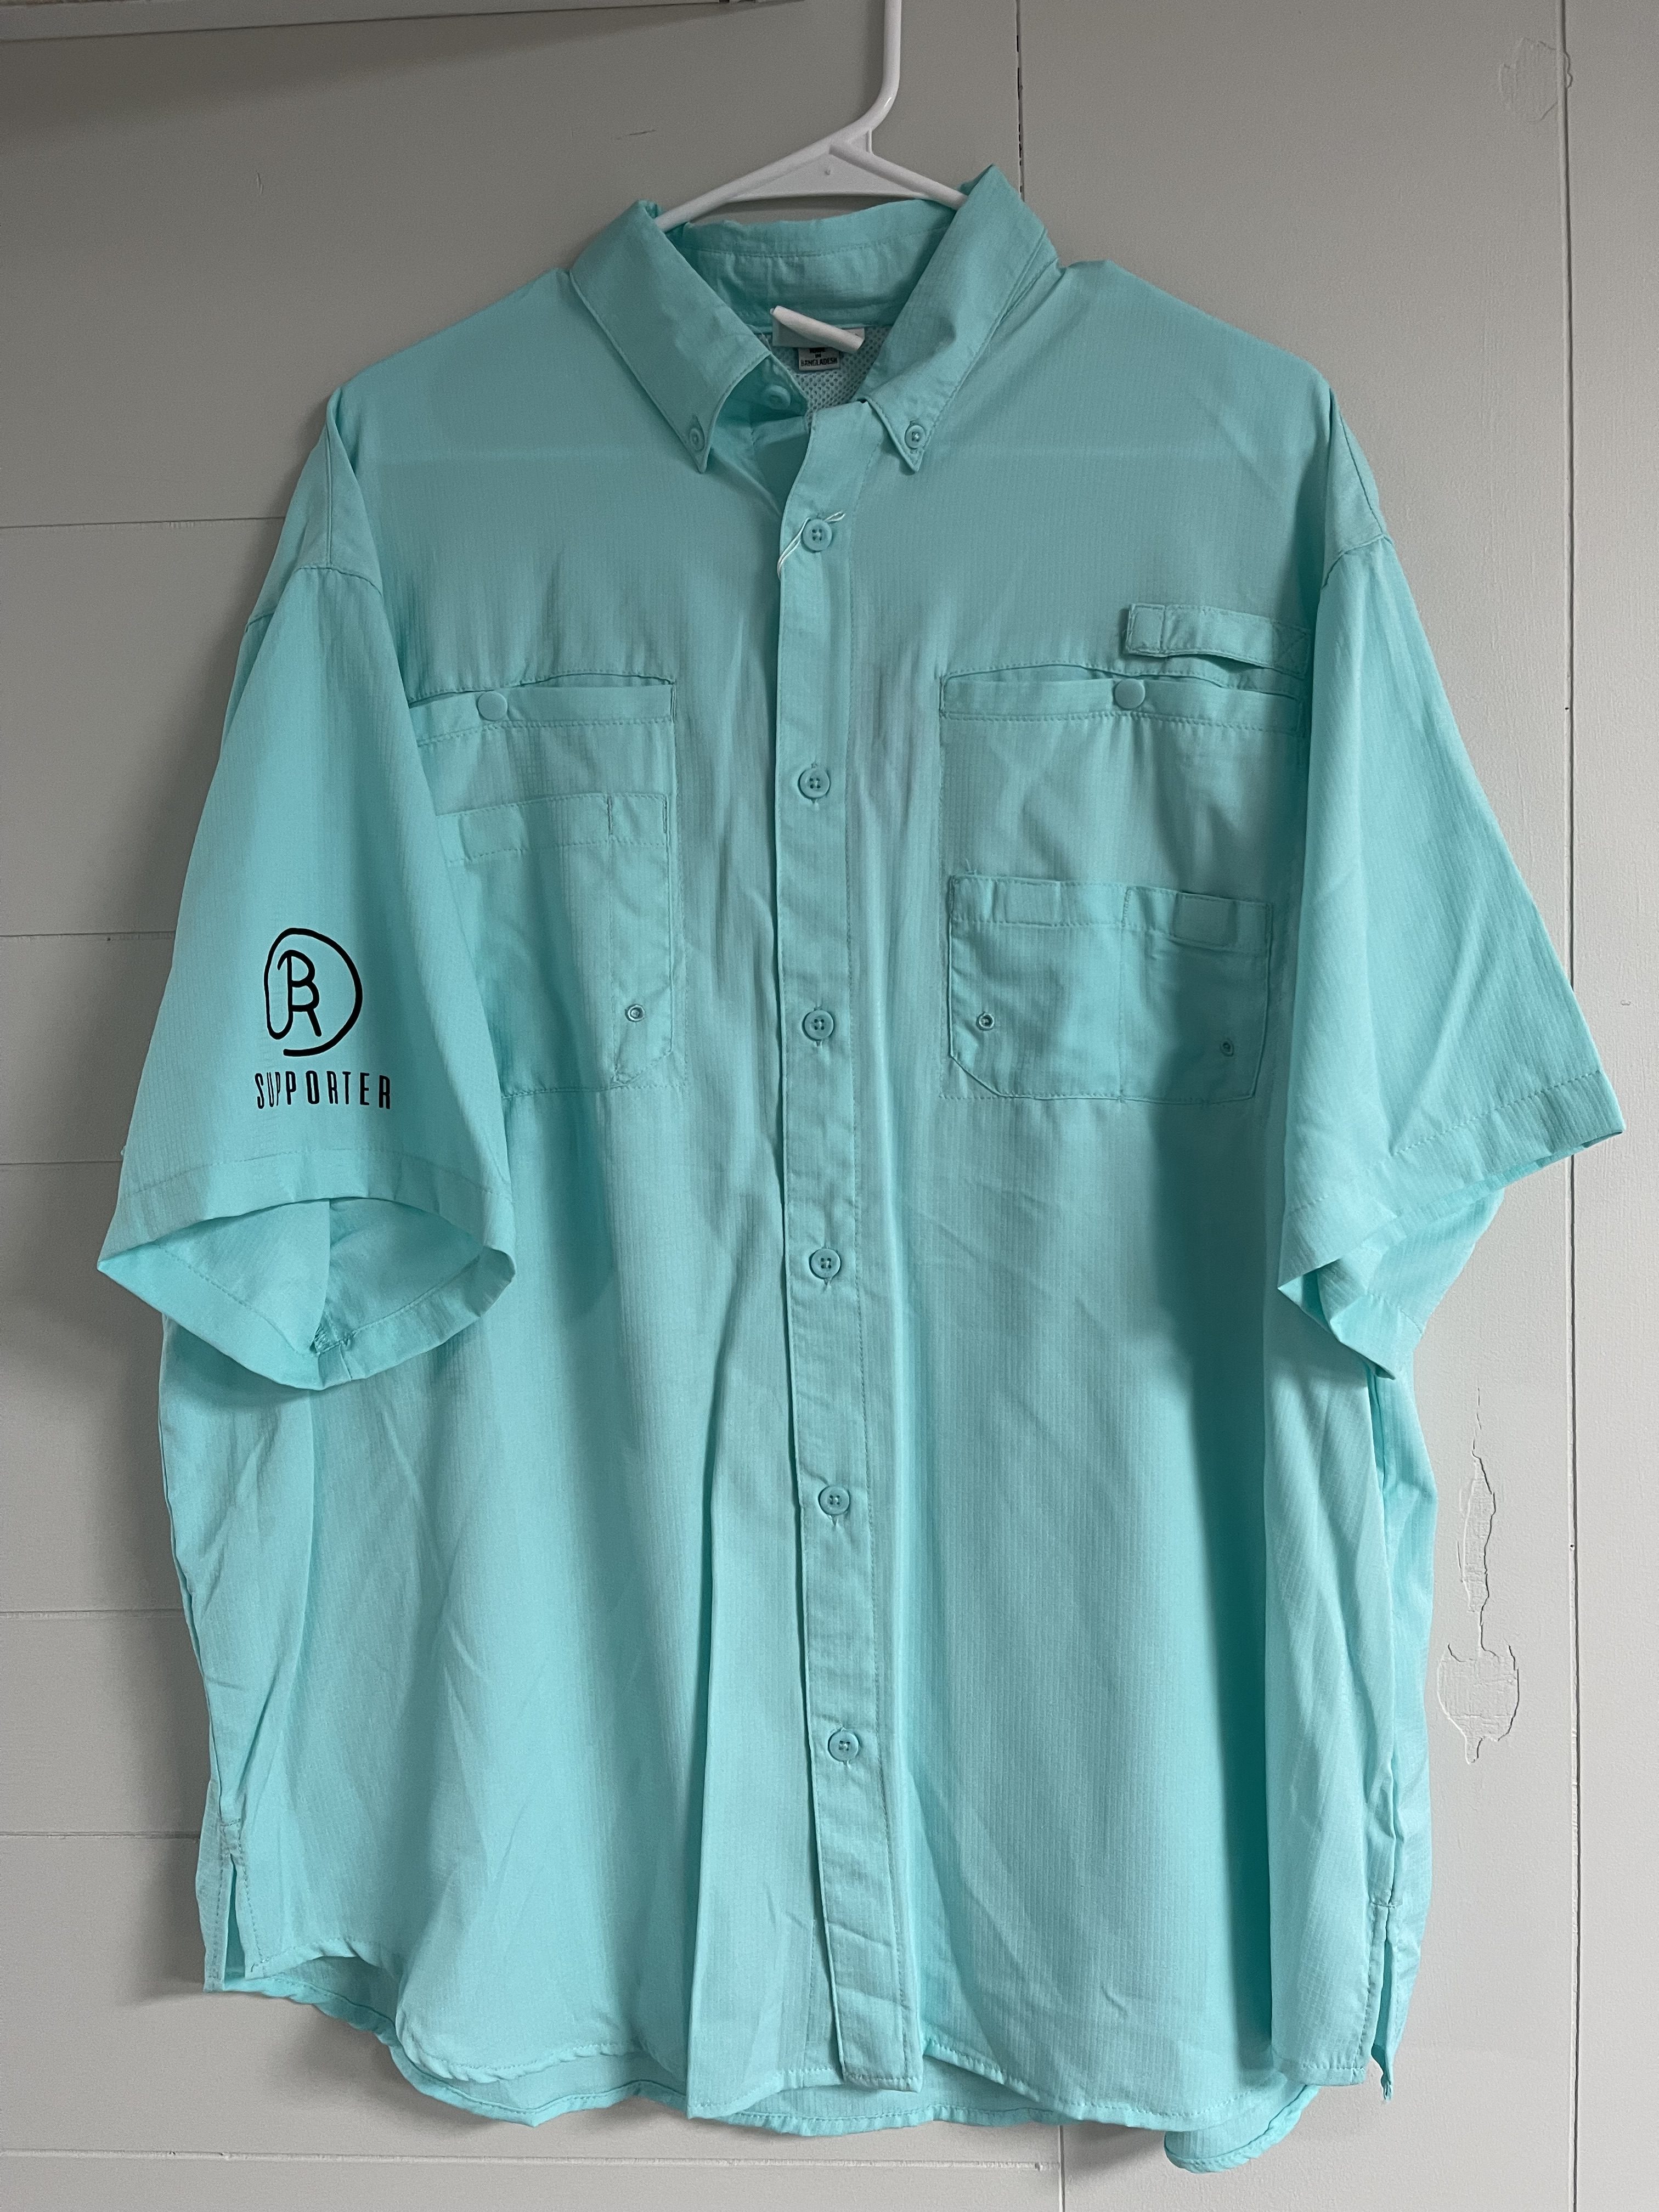 Magellan fishing shirt  Fishing shirts, Shirt shop, Mens tops